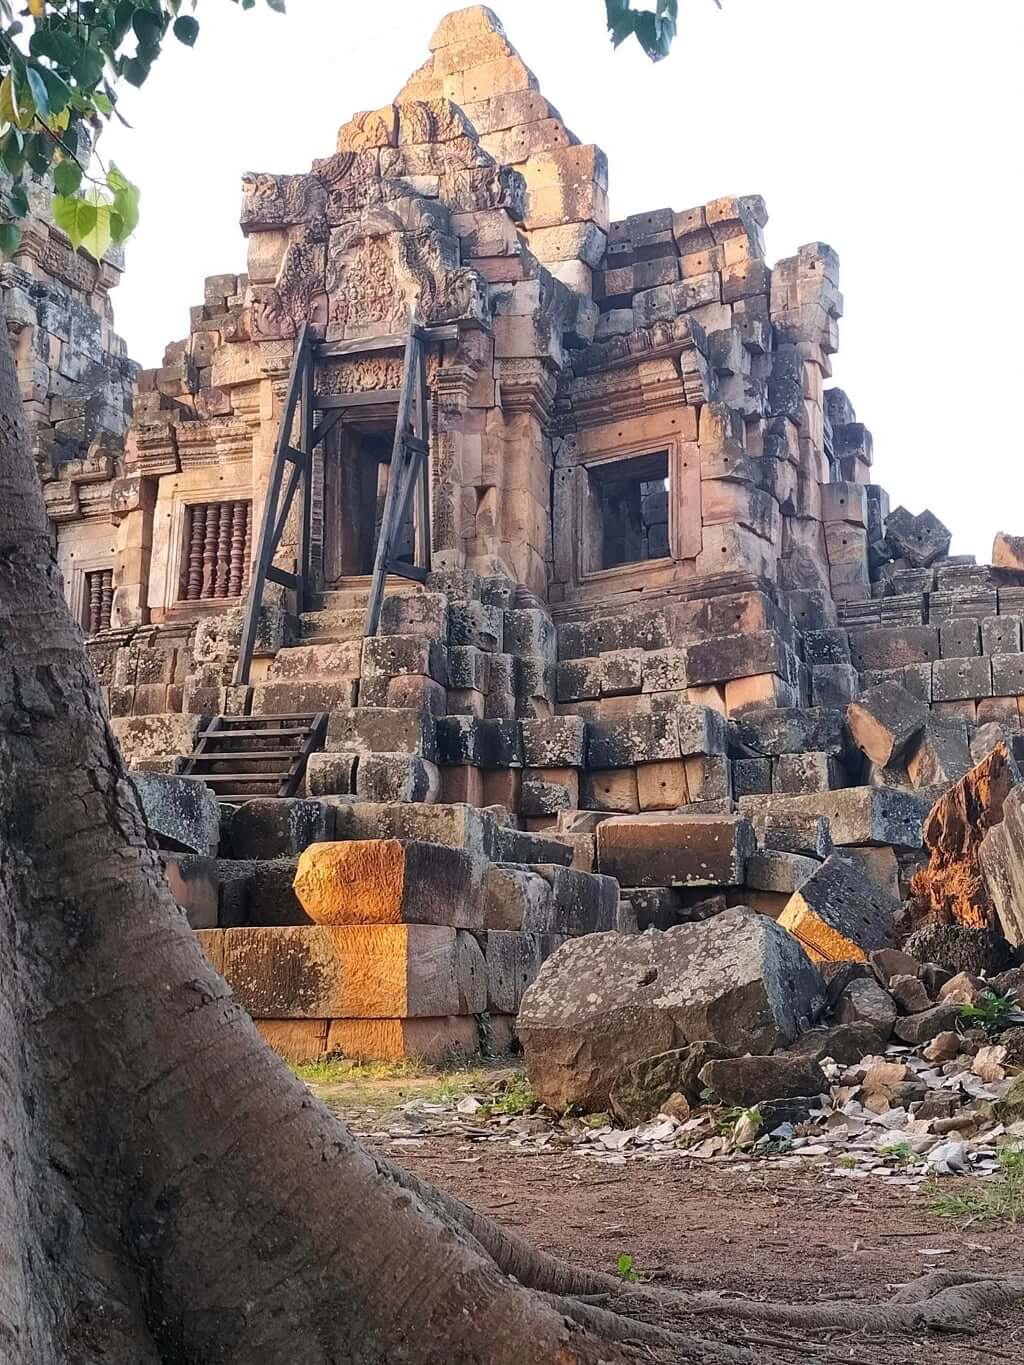 Cambodia-Itinerary-13-Days-Angkor-Wat-Siem-Reap-Battambang-6.jpeg